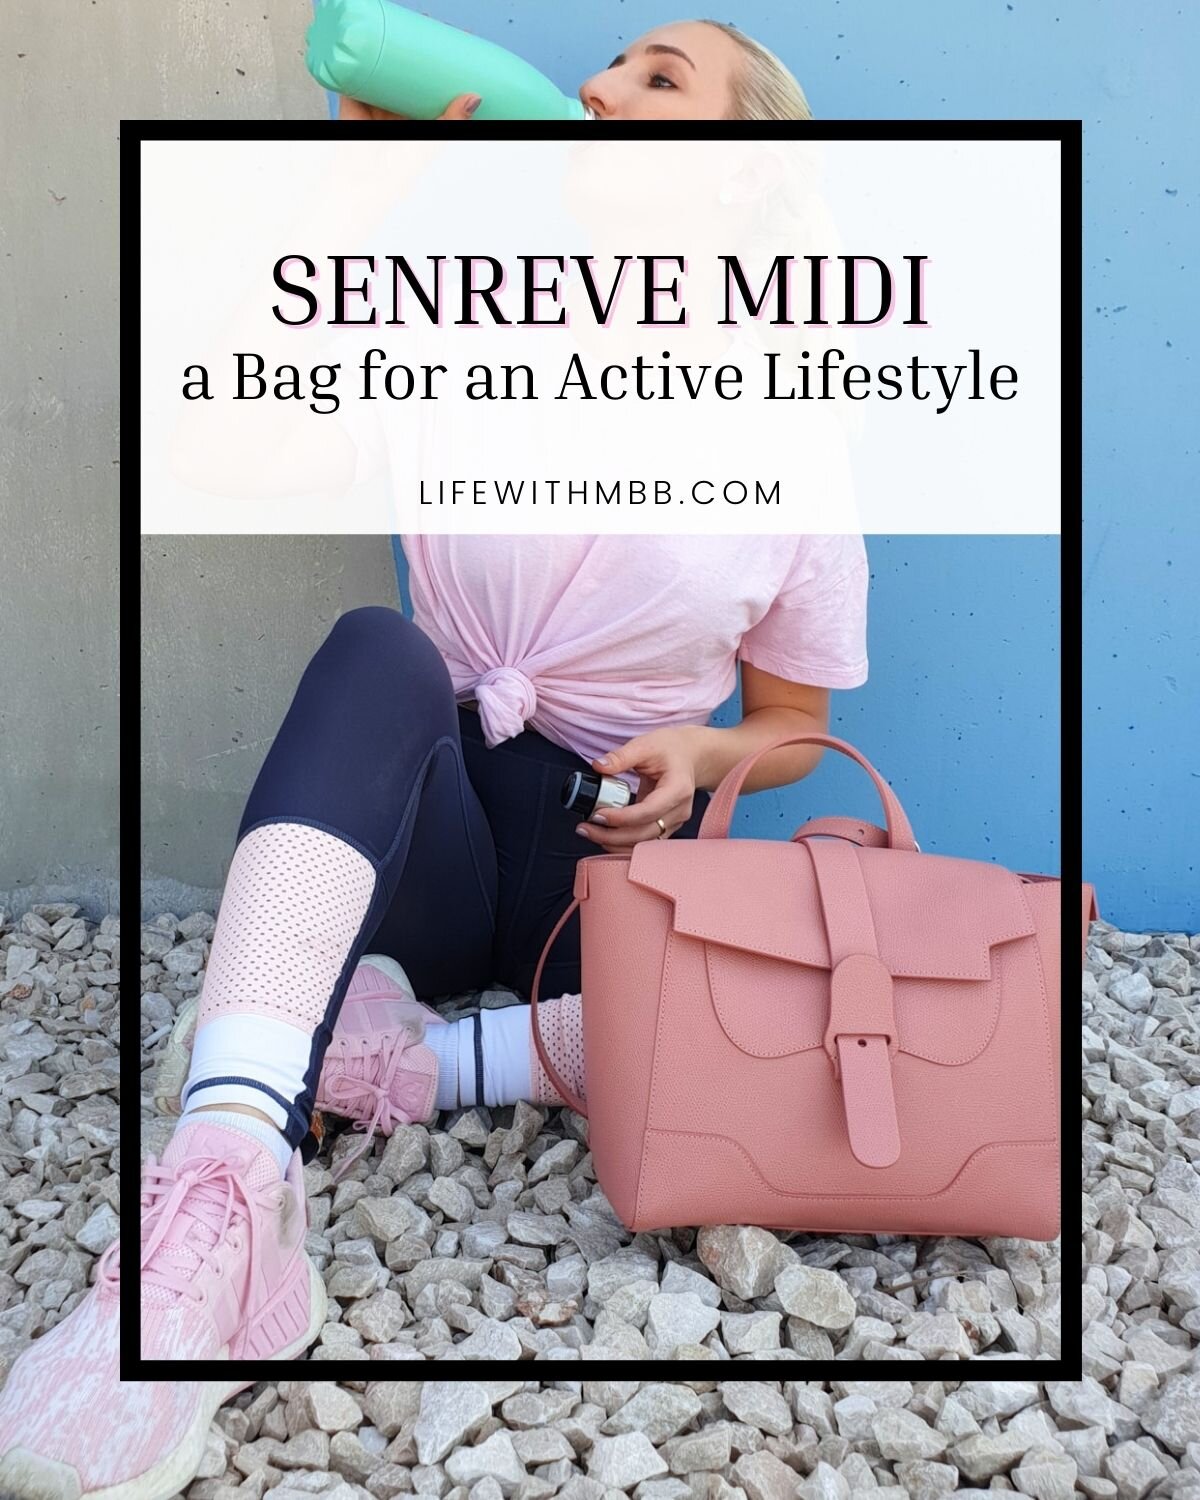 Senreve Maestra Handbag Review